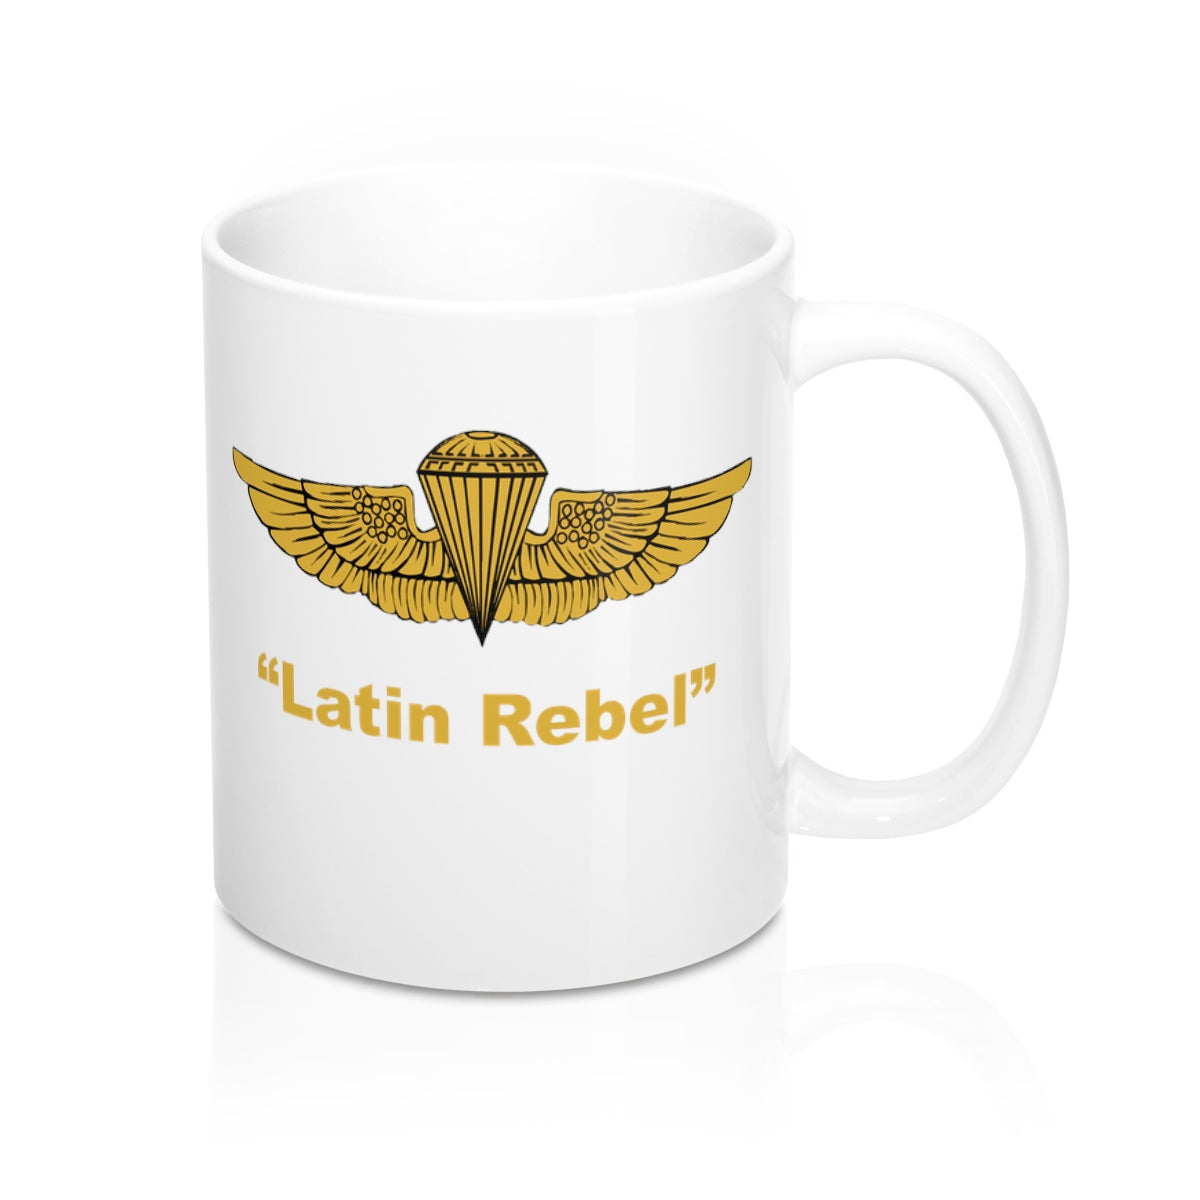 Latin Rebel